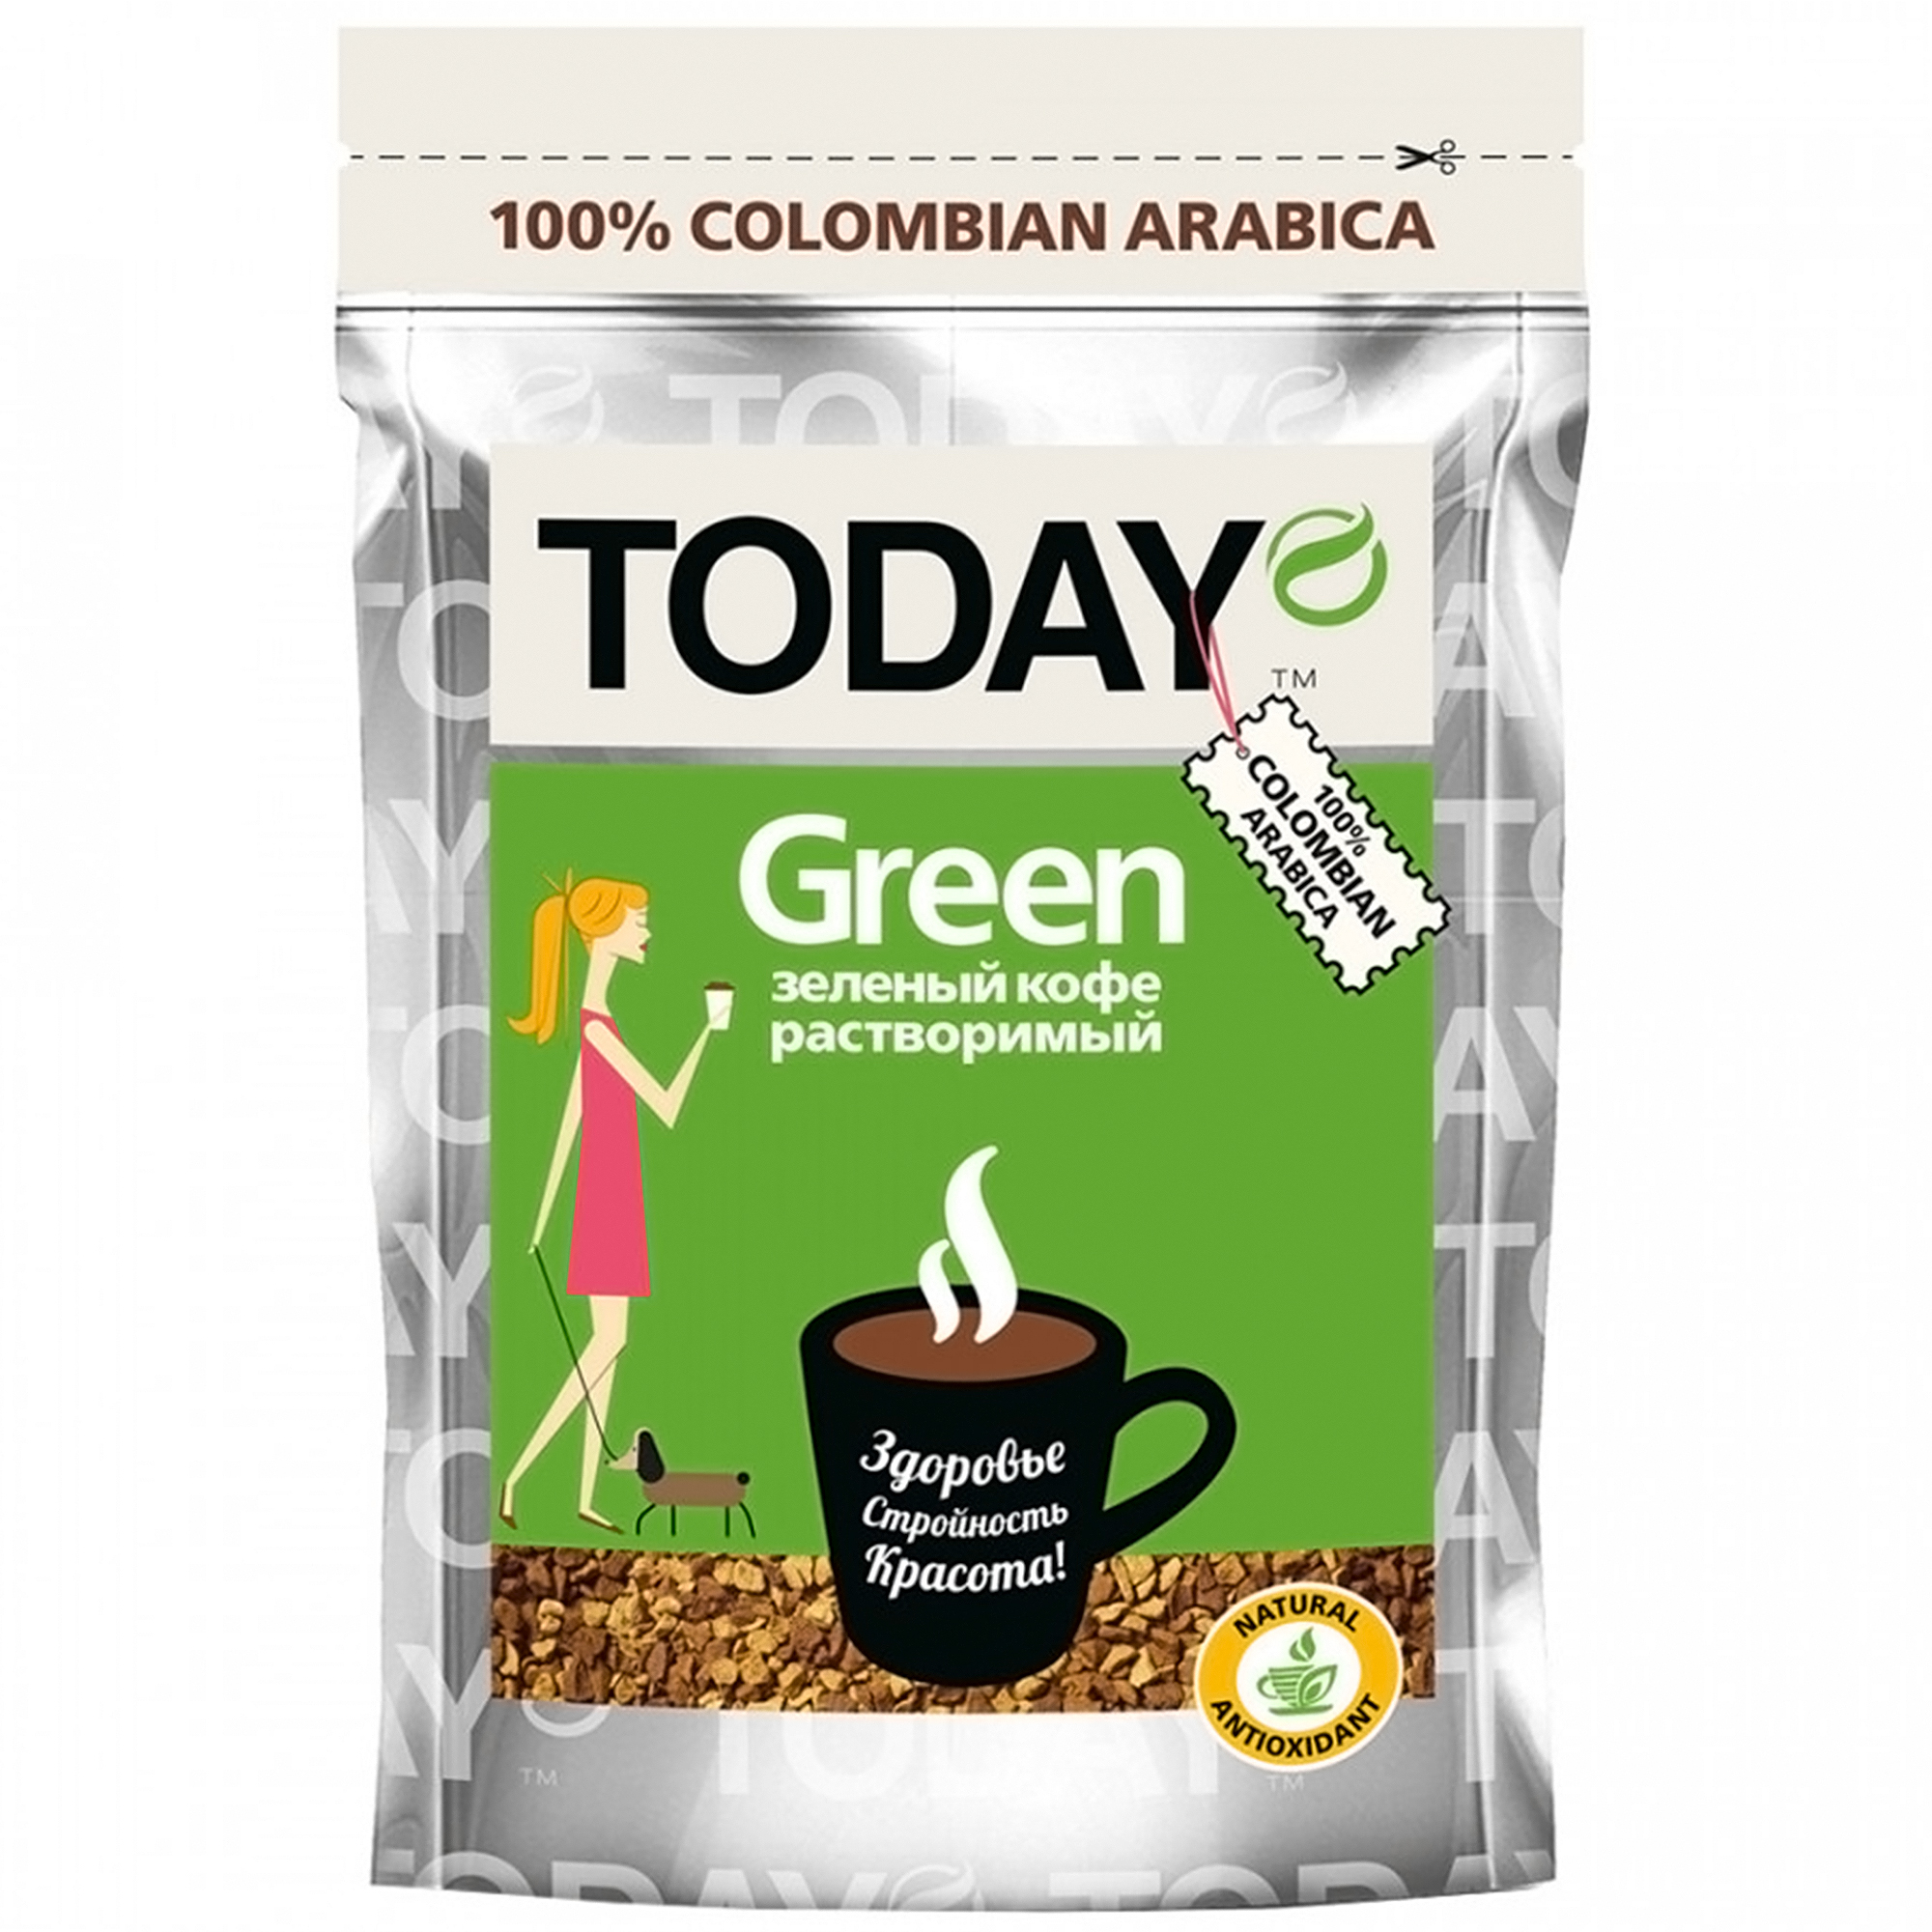 Кофе Today Green растворимый сублимированный, 75 г кофе растворимый jacobs monarch 47 5 г